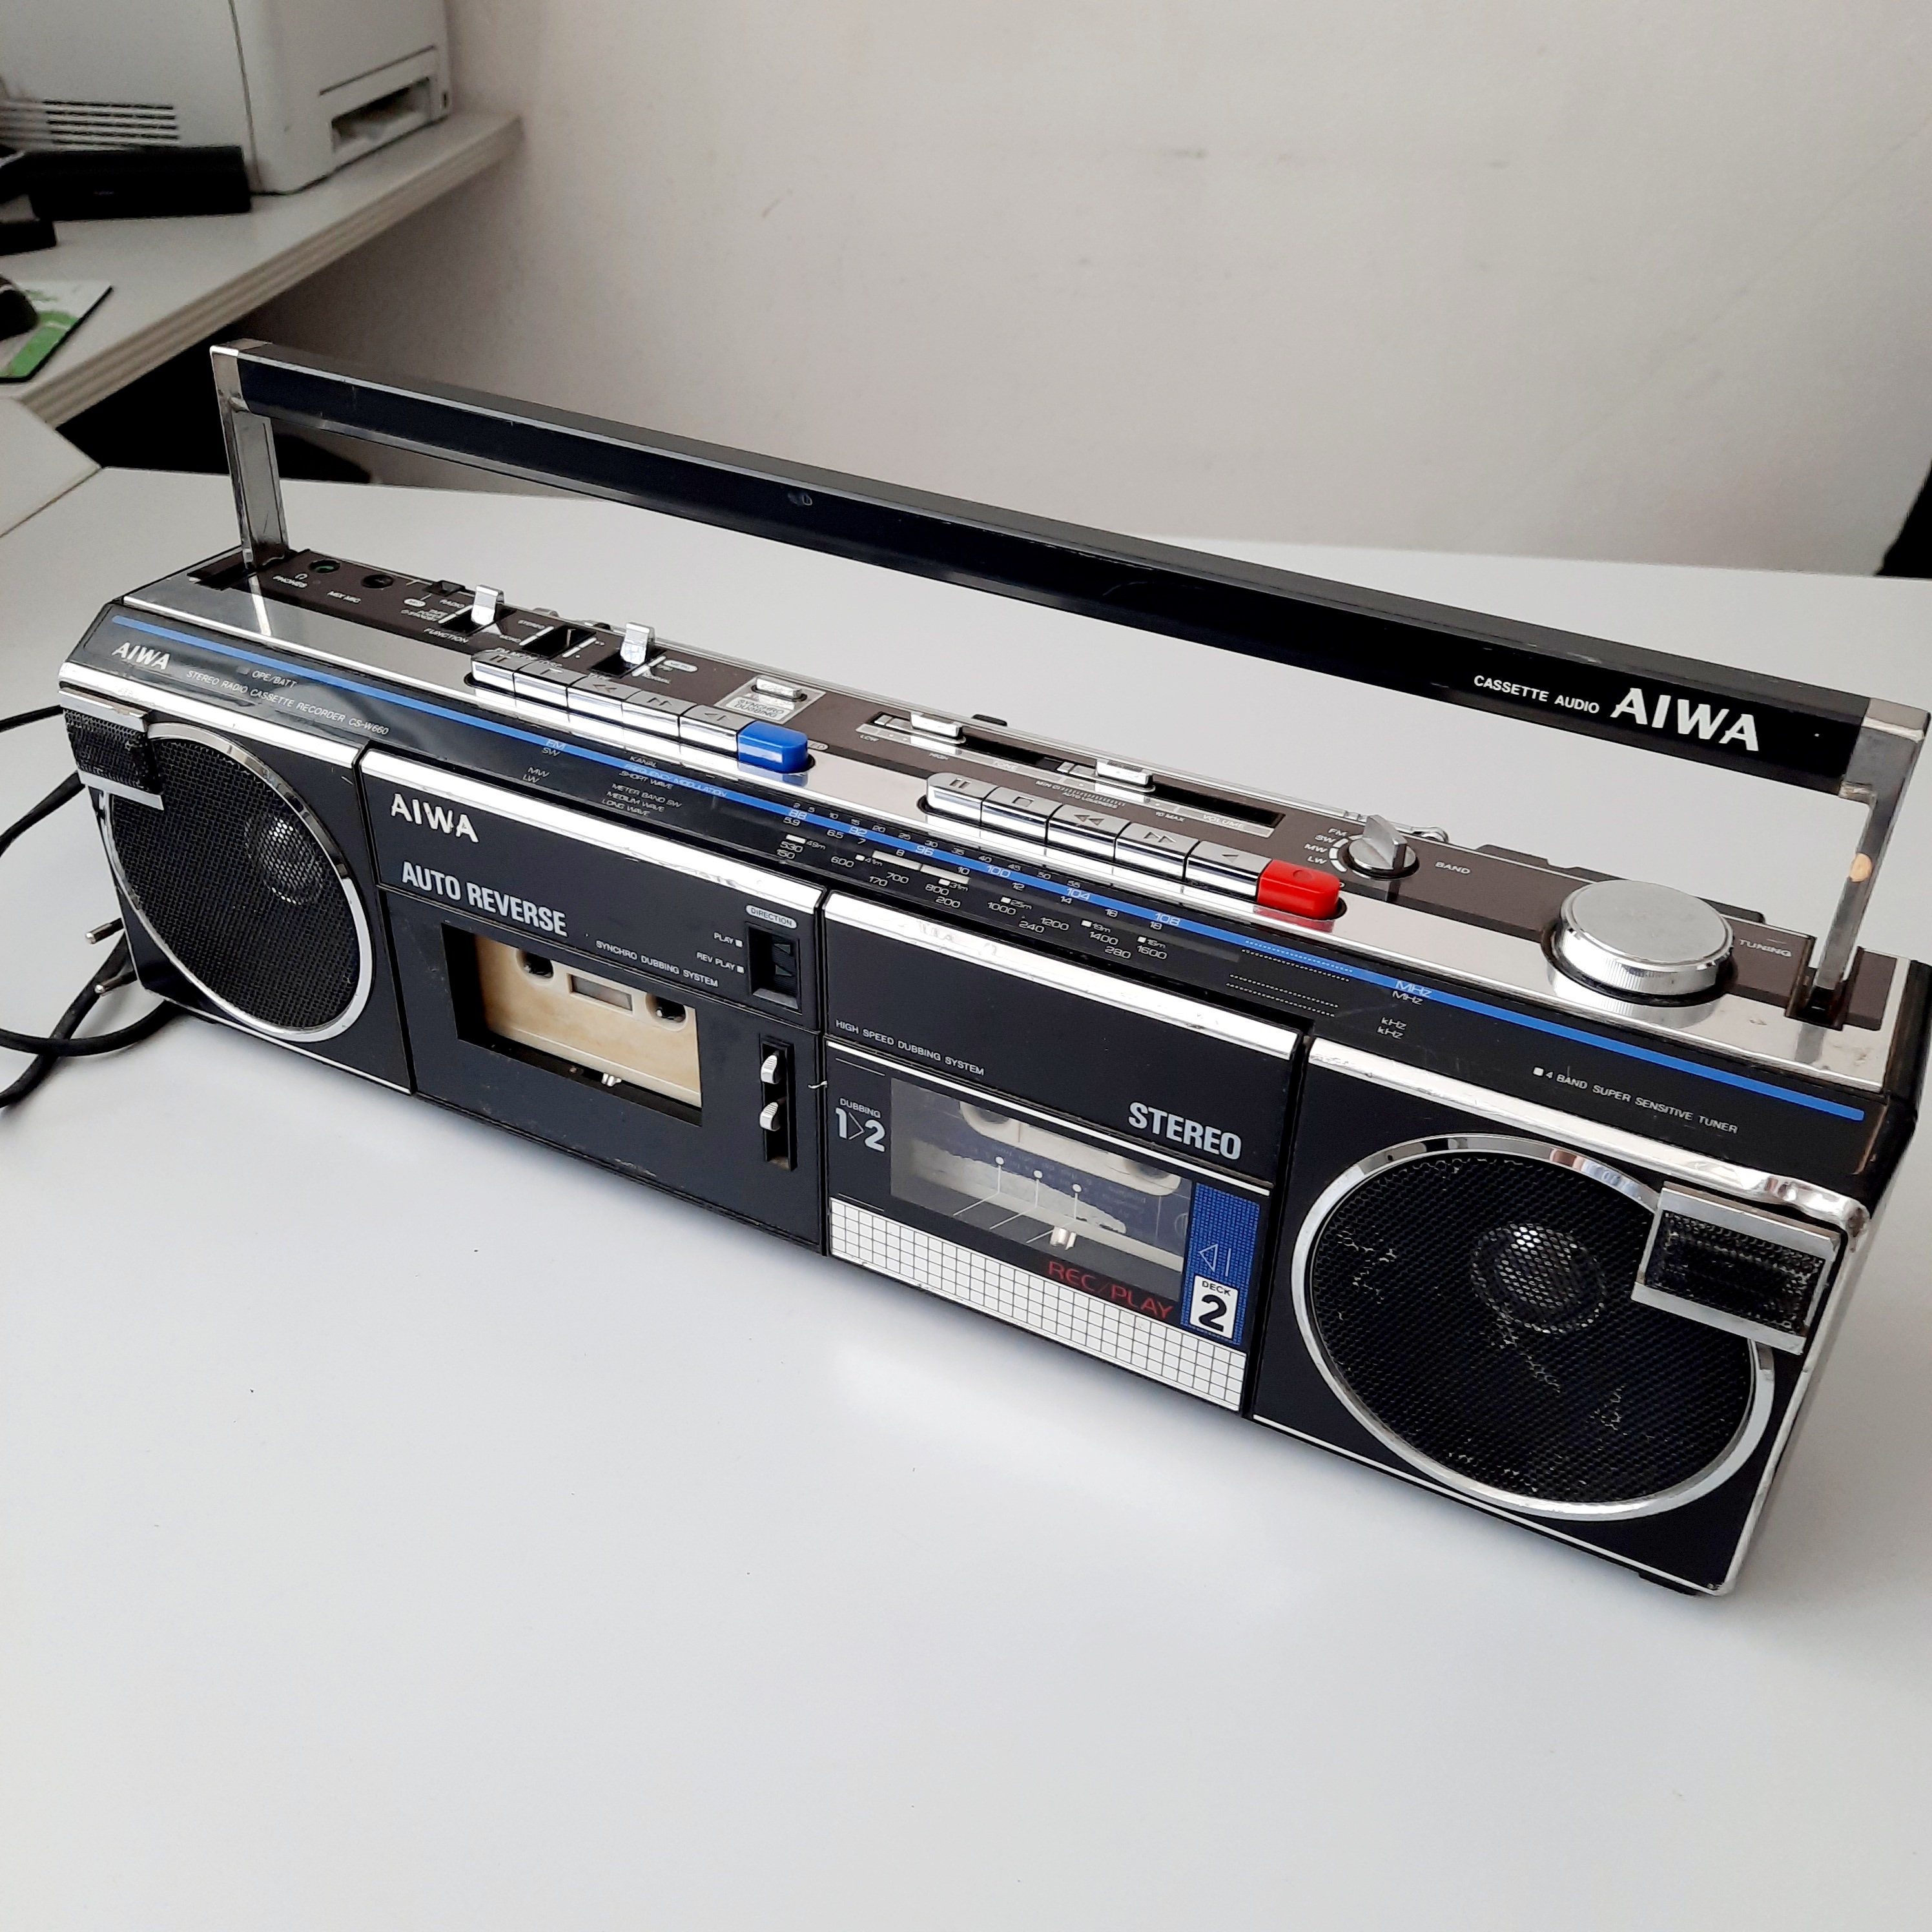 Lecteur cassette vhs-c telefunken vidéo recorder 1900 m